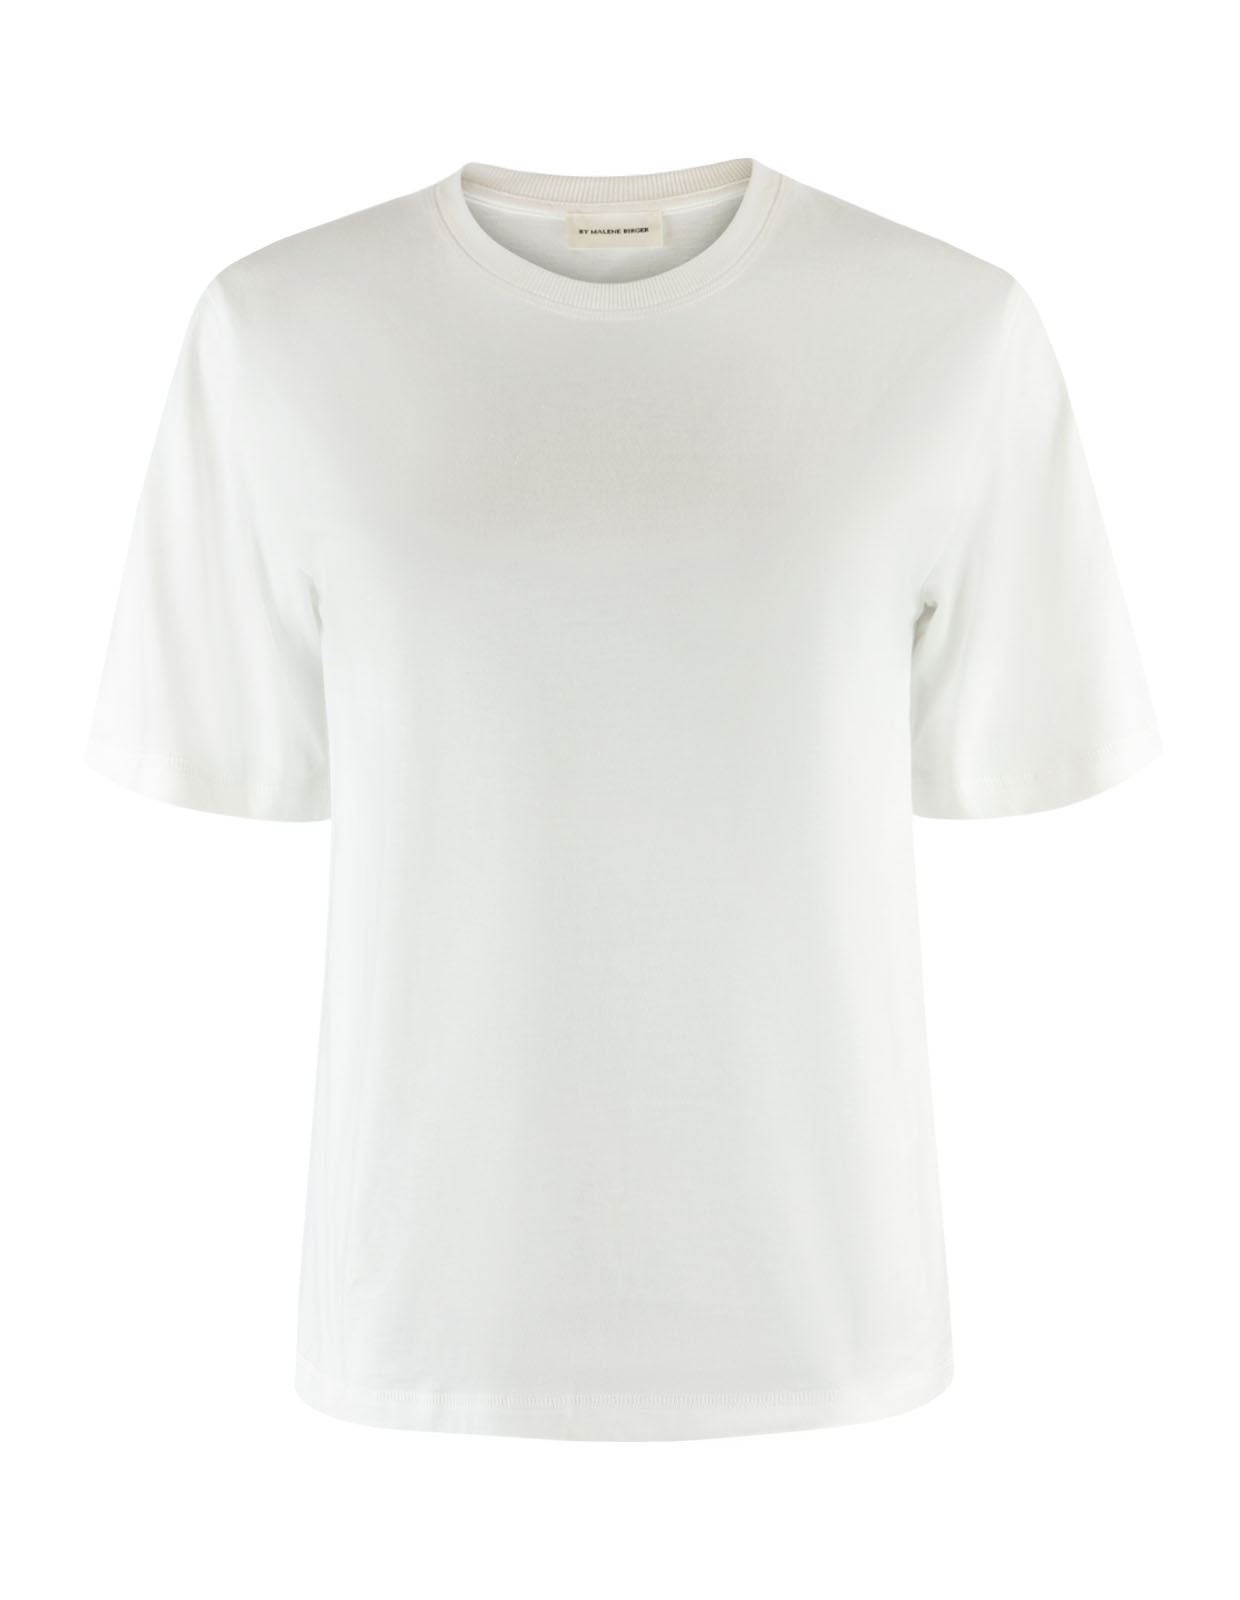 Hedil T-Shirt Soft White